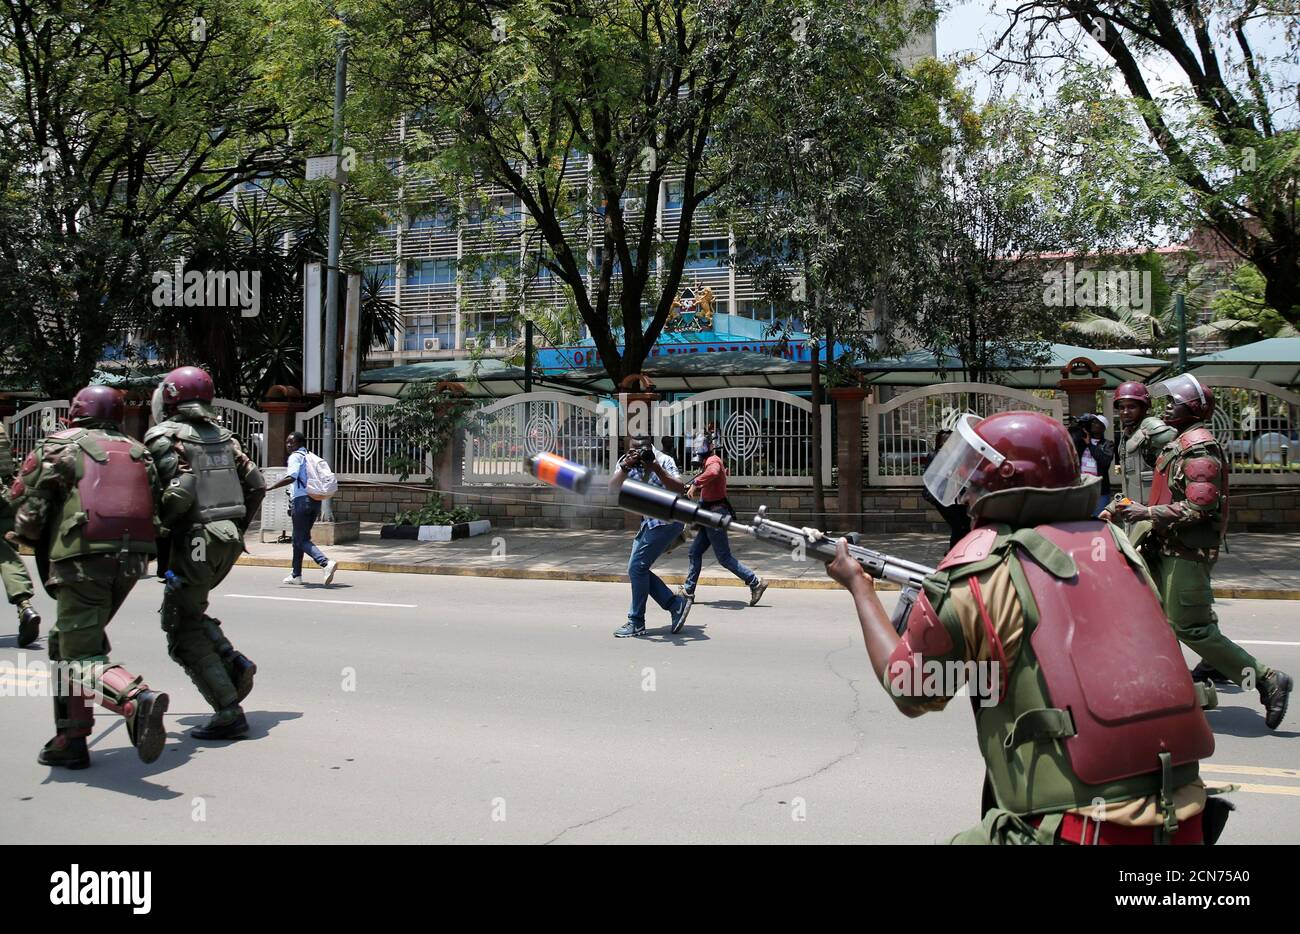 Un policía antidisturbios dispara gases lacrimógenos para dispersar a los partidarios de la coalición de la oposición keniana National Super Alliance (NASA), durante una protesta a lo largo de una calle en Nairobi, Kenia, el 16 de octubre de 2017. REUTERS/Thomas Mukoya Foto de stock